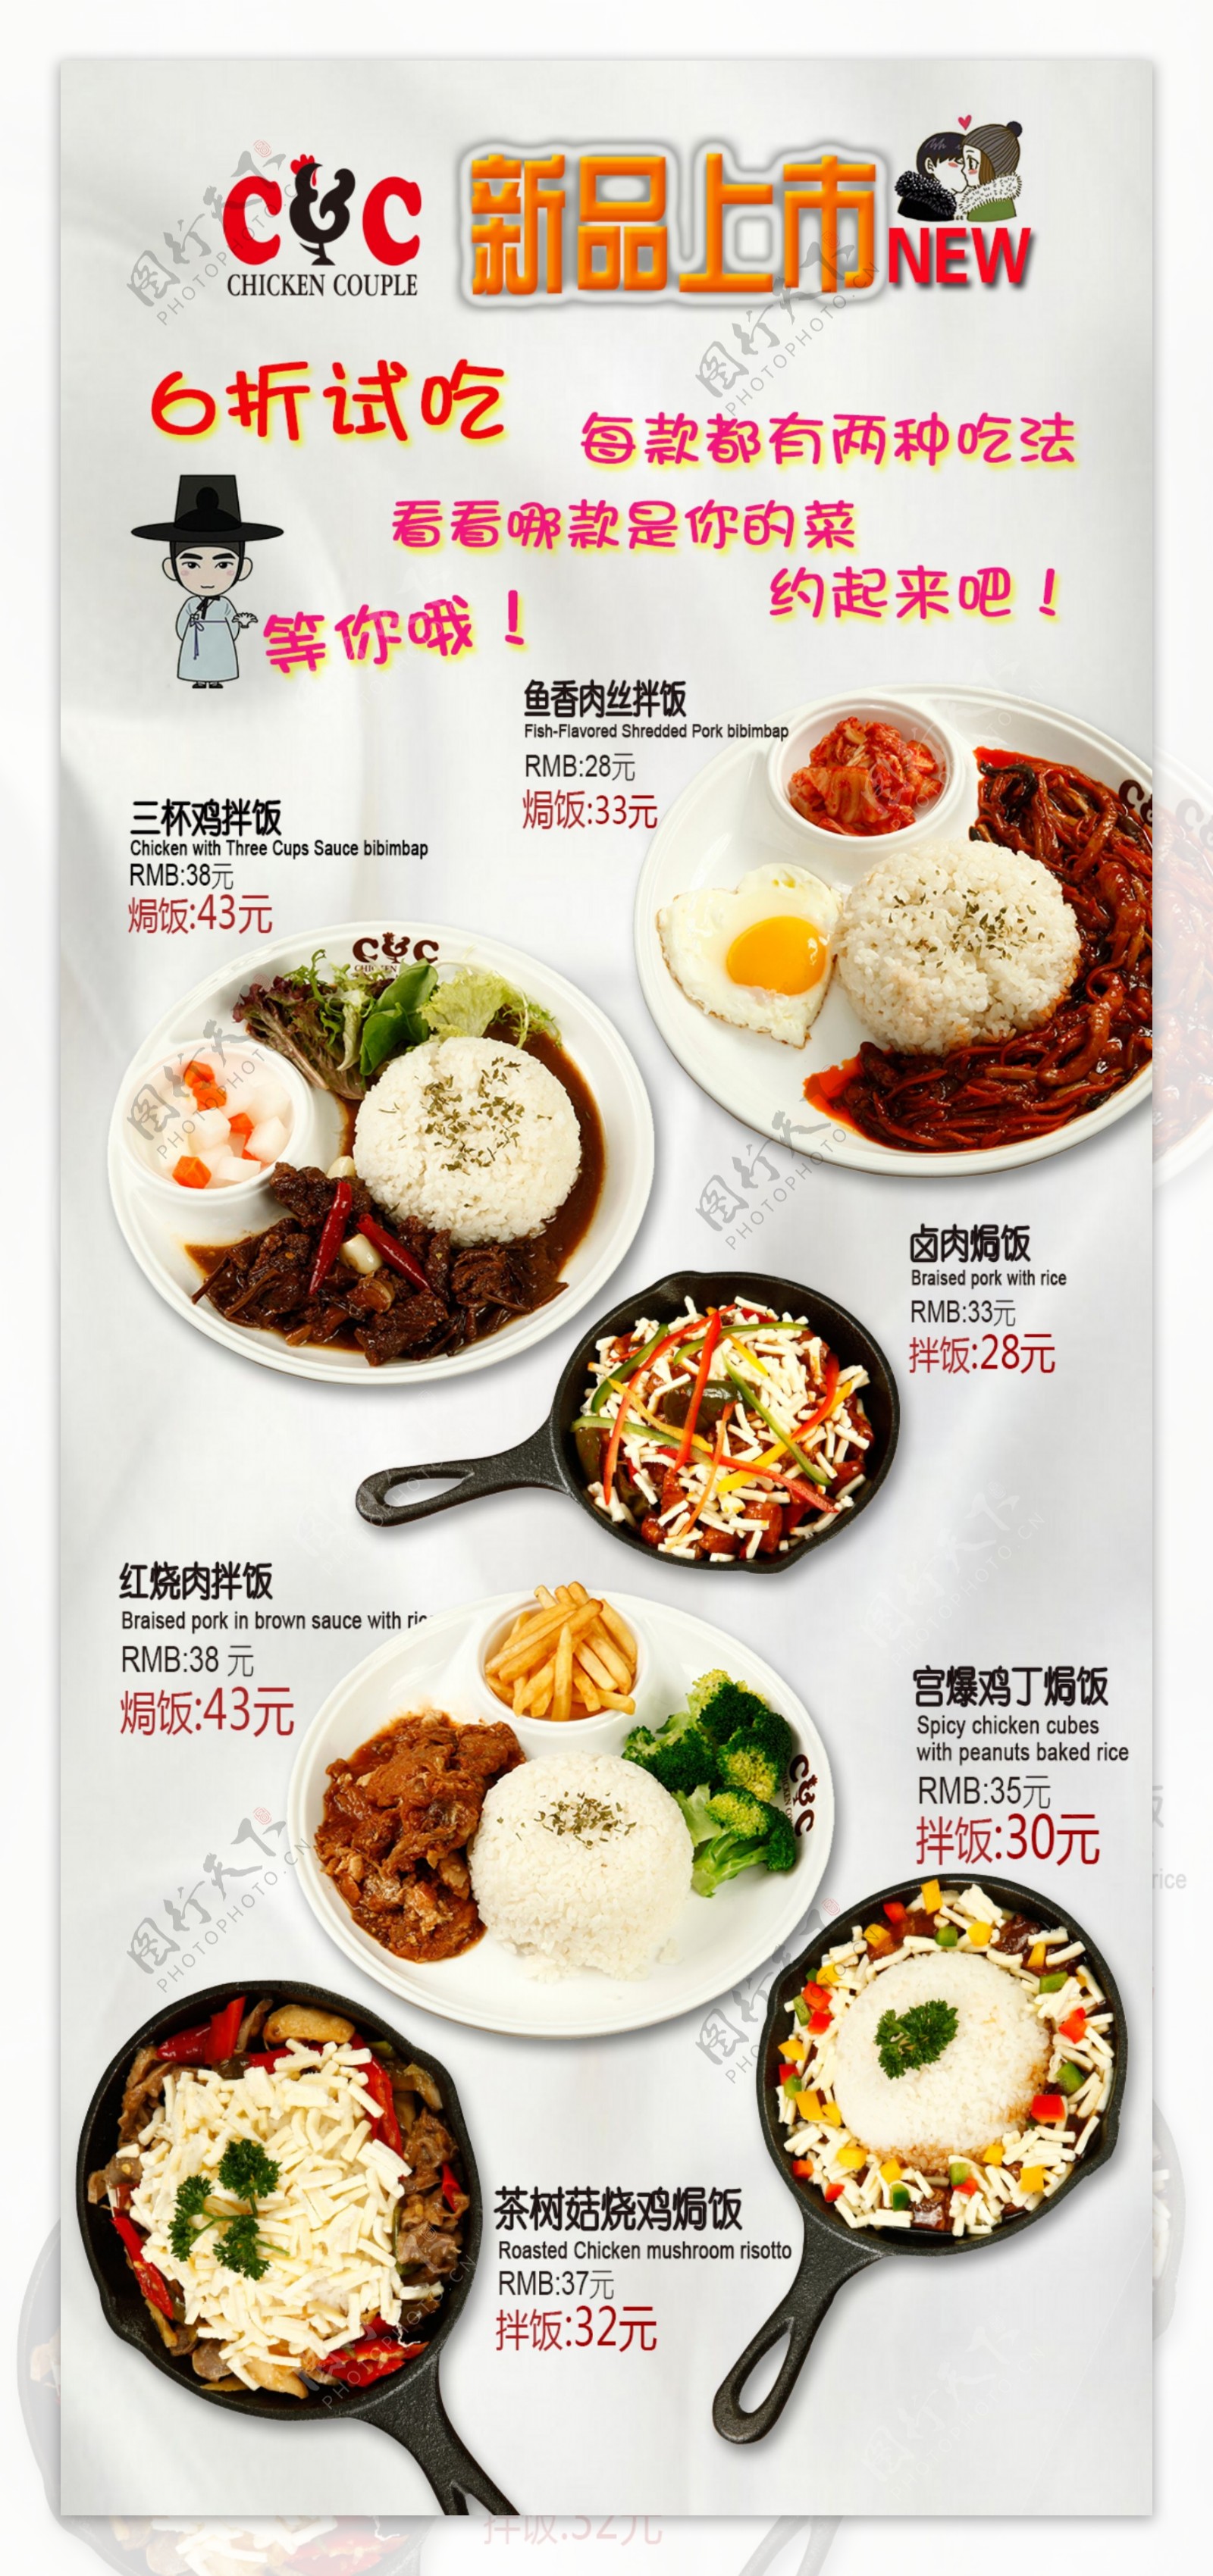 韩国菜单